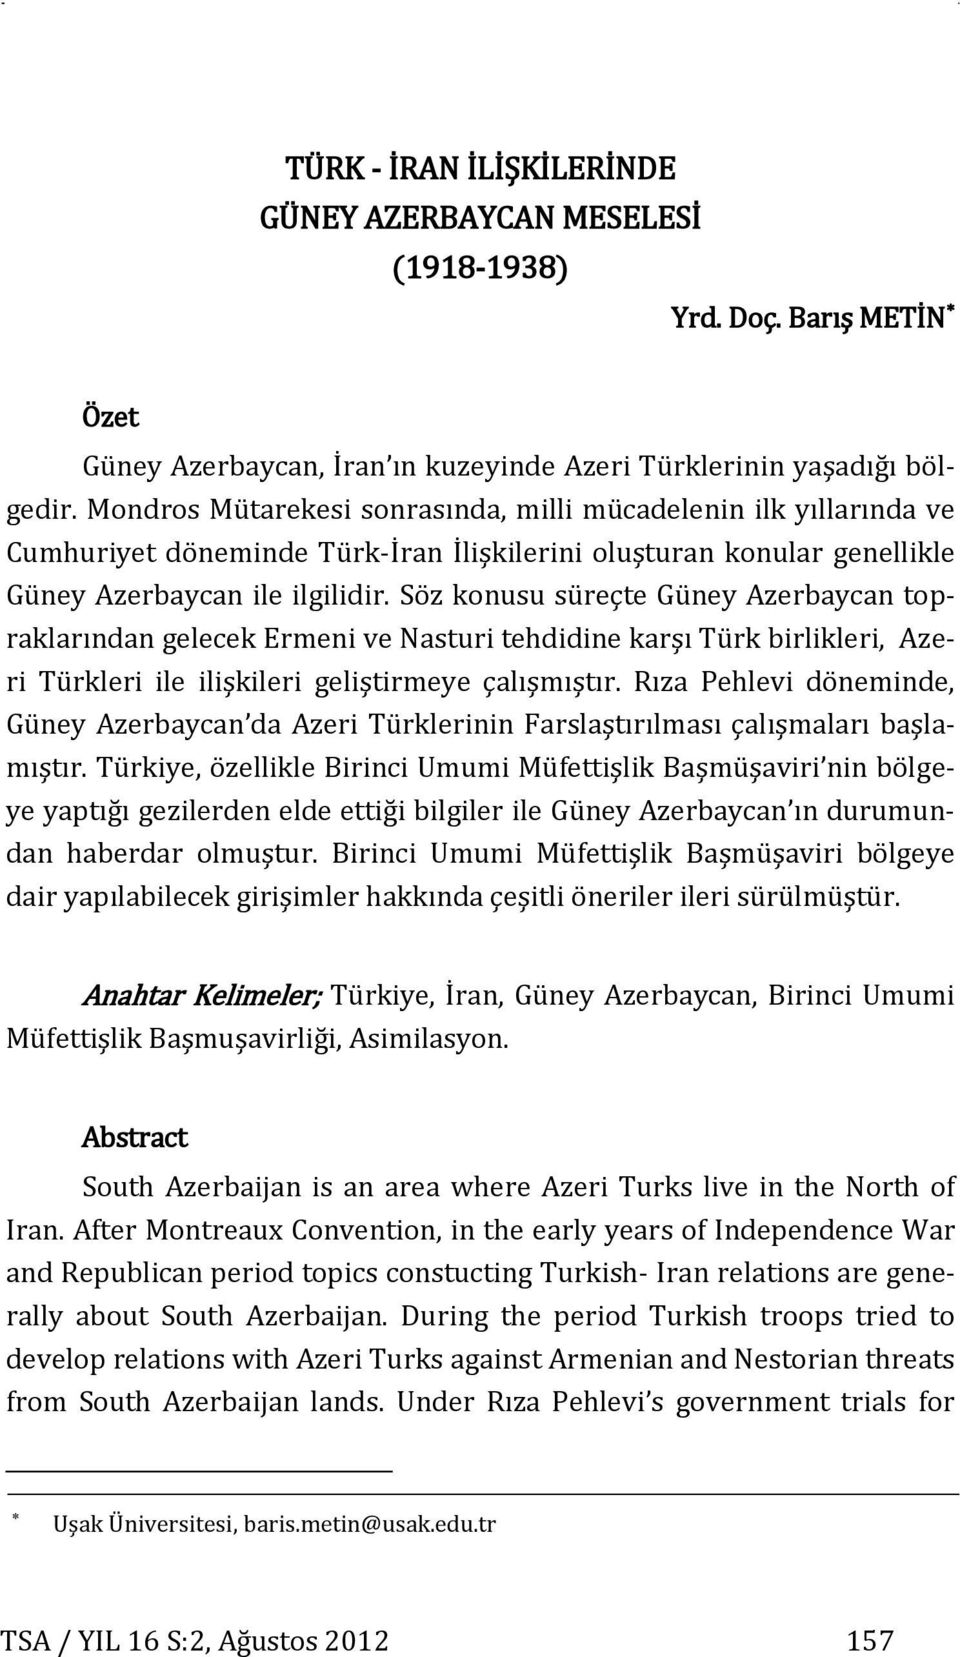 Mondros Mütarekesi sonrasında, milli mücadelenin ilk yıllarında ve Cumhuriyet döneminde Türk-İran İlişkilerini oluşturan konular genellikle Güney Azerbaycan ile ilgilidir.